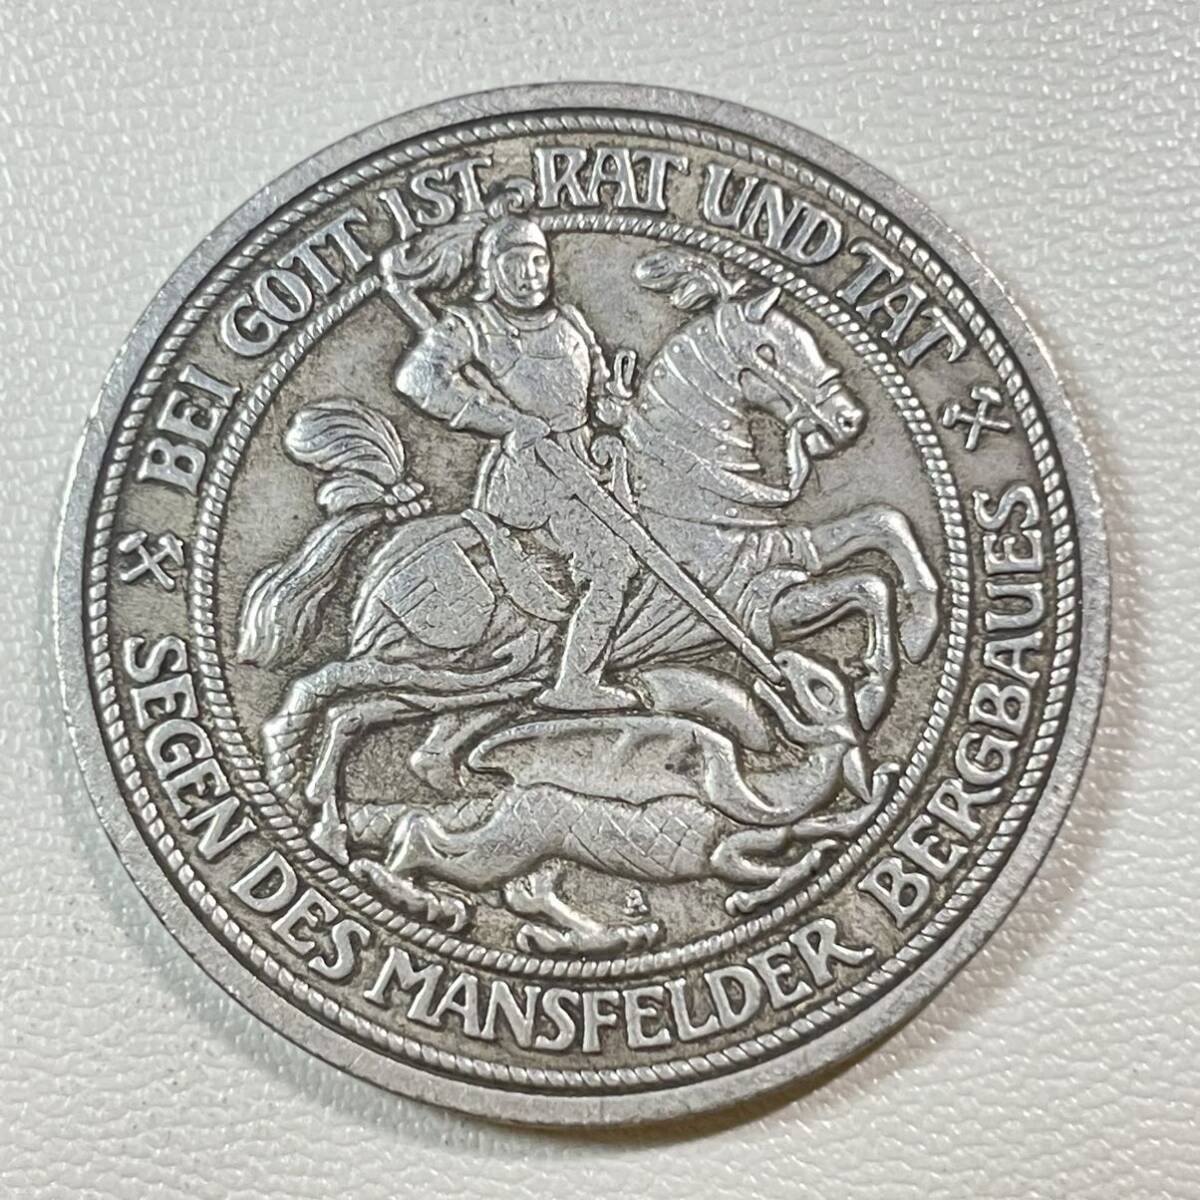 ドイツ 硬貨 古銭 ヴィルヘルム2世 1915年 マンスフェルト没後100周年記念 3マーク 騎士 ドラゴン倒し コイン 重14.16g_画像2